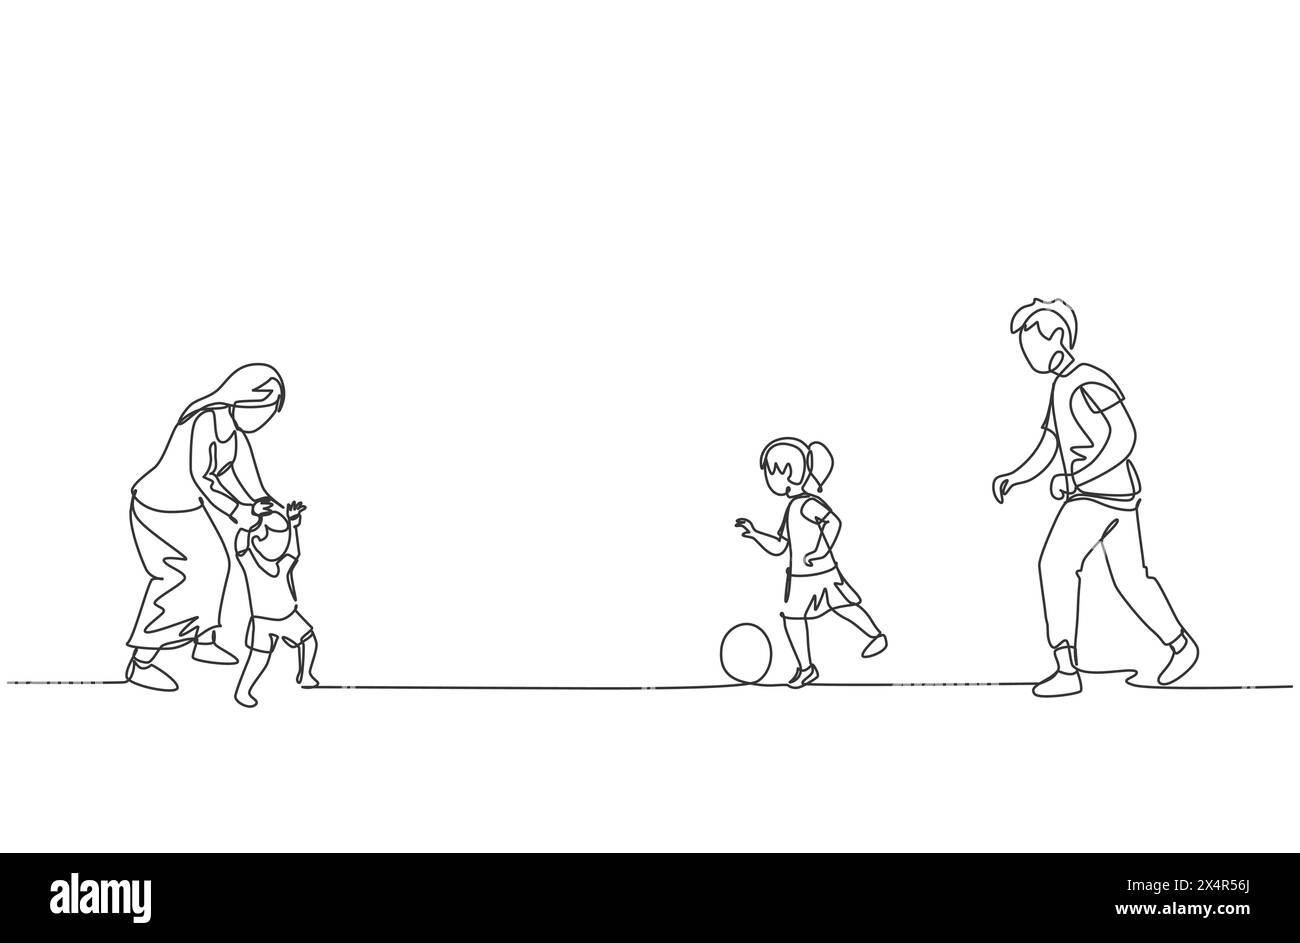 Un dessin simple ligne de jeune père jouant au football avec sa fille tandis que la mère apprend à son fils à marcher au champ illustration vectorielle. Famille heureuse pare Illustration de Vecteur